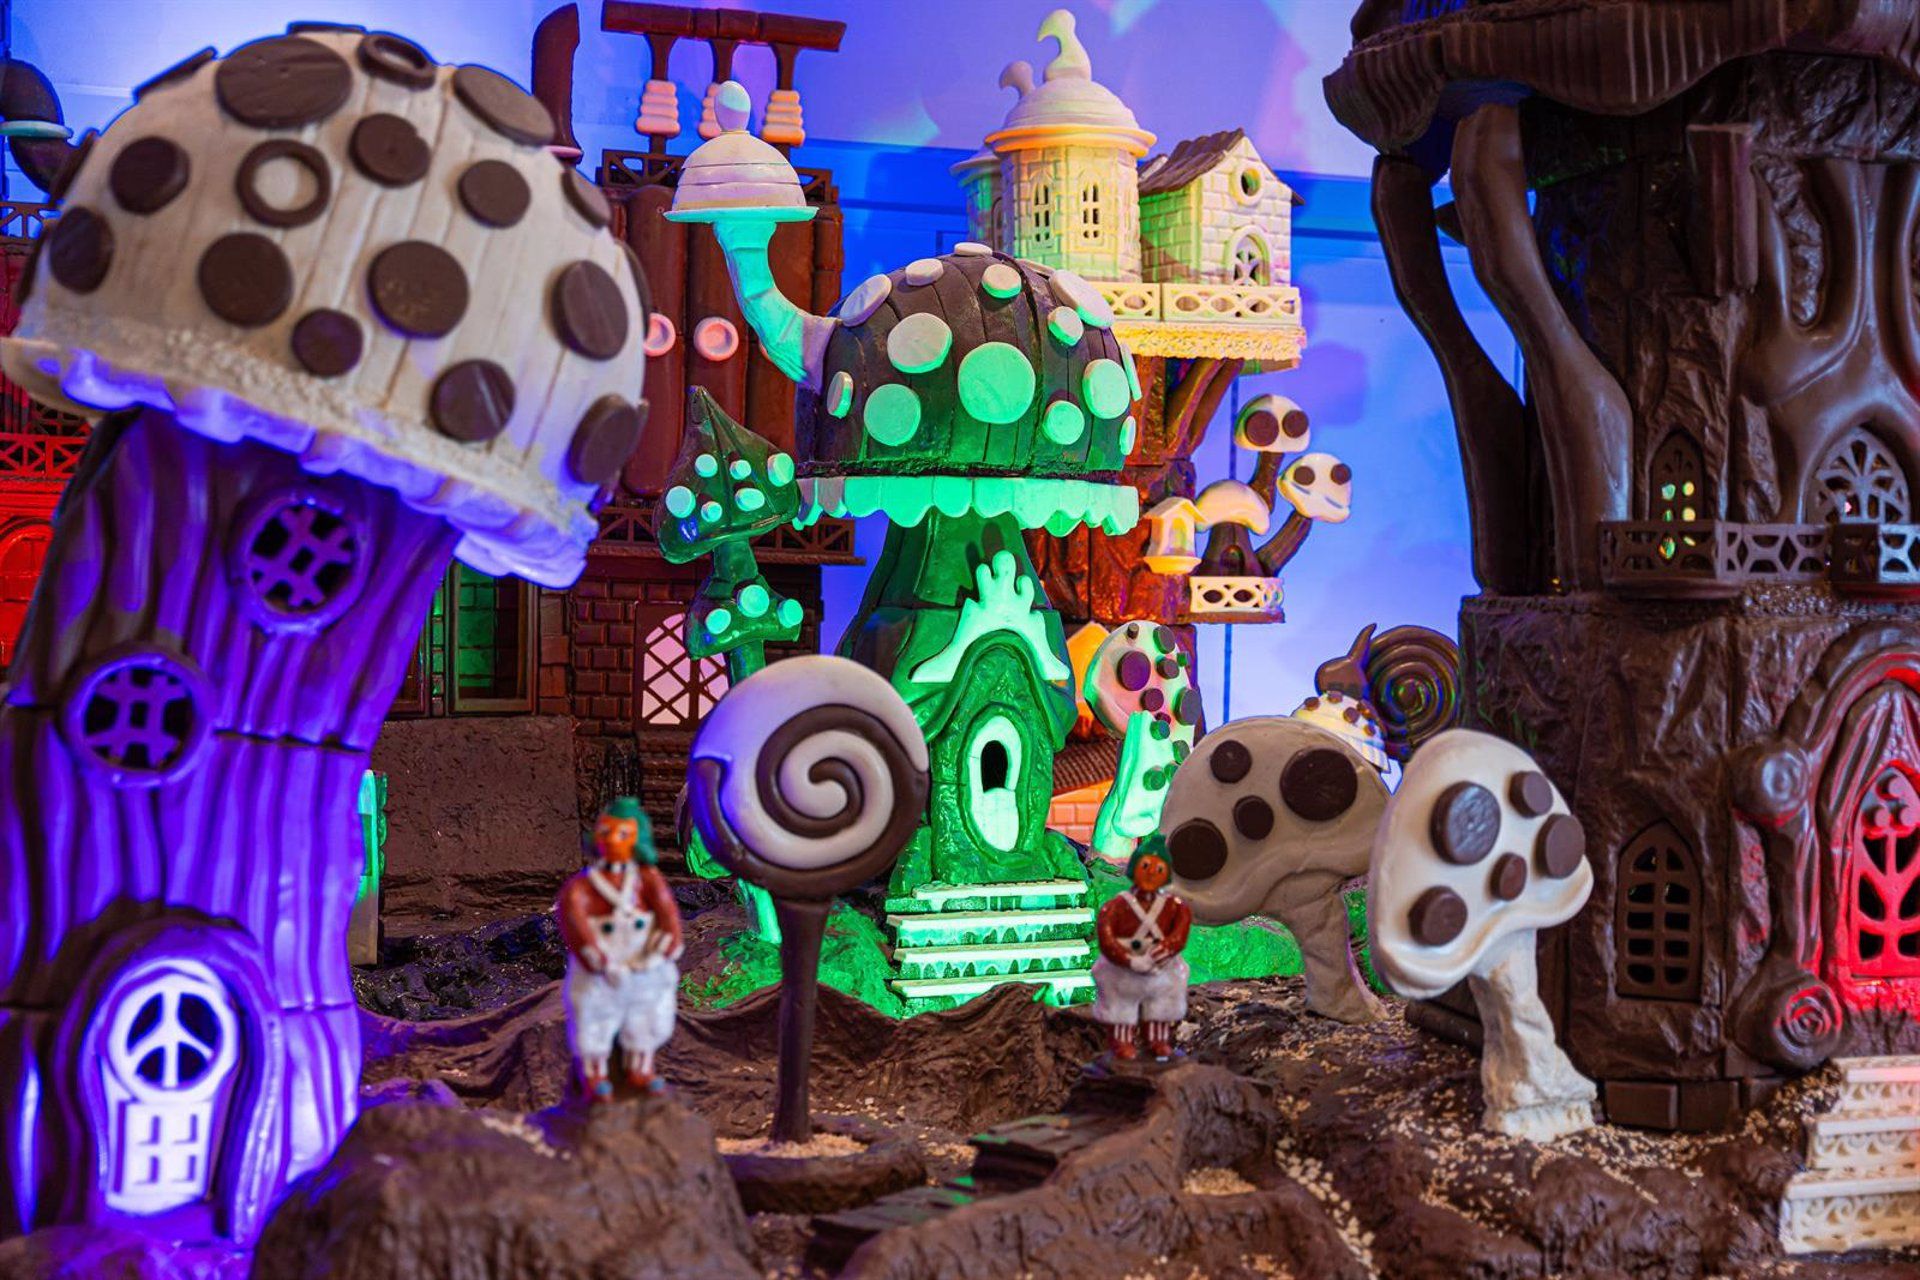 El 'mundo Willy Wonka' aterriza este jueves en Bahía Sur con la mayor exposición de chocolate de España